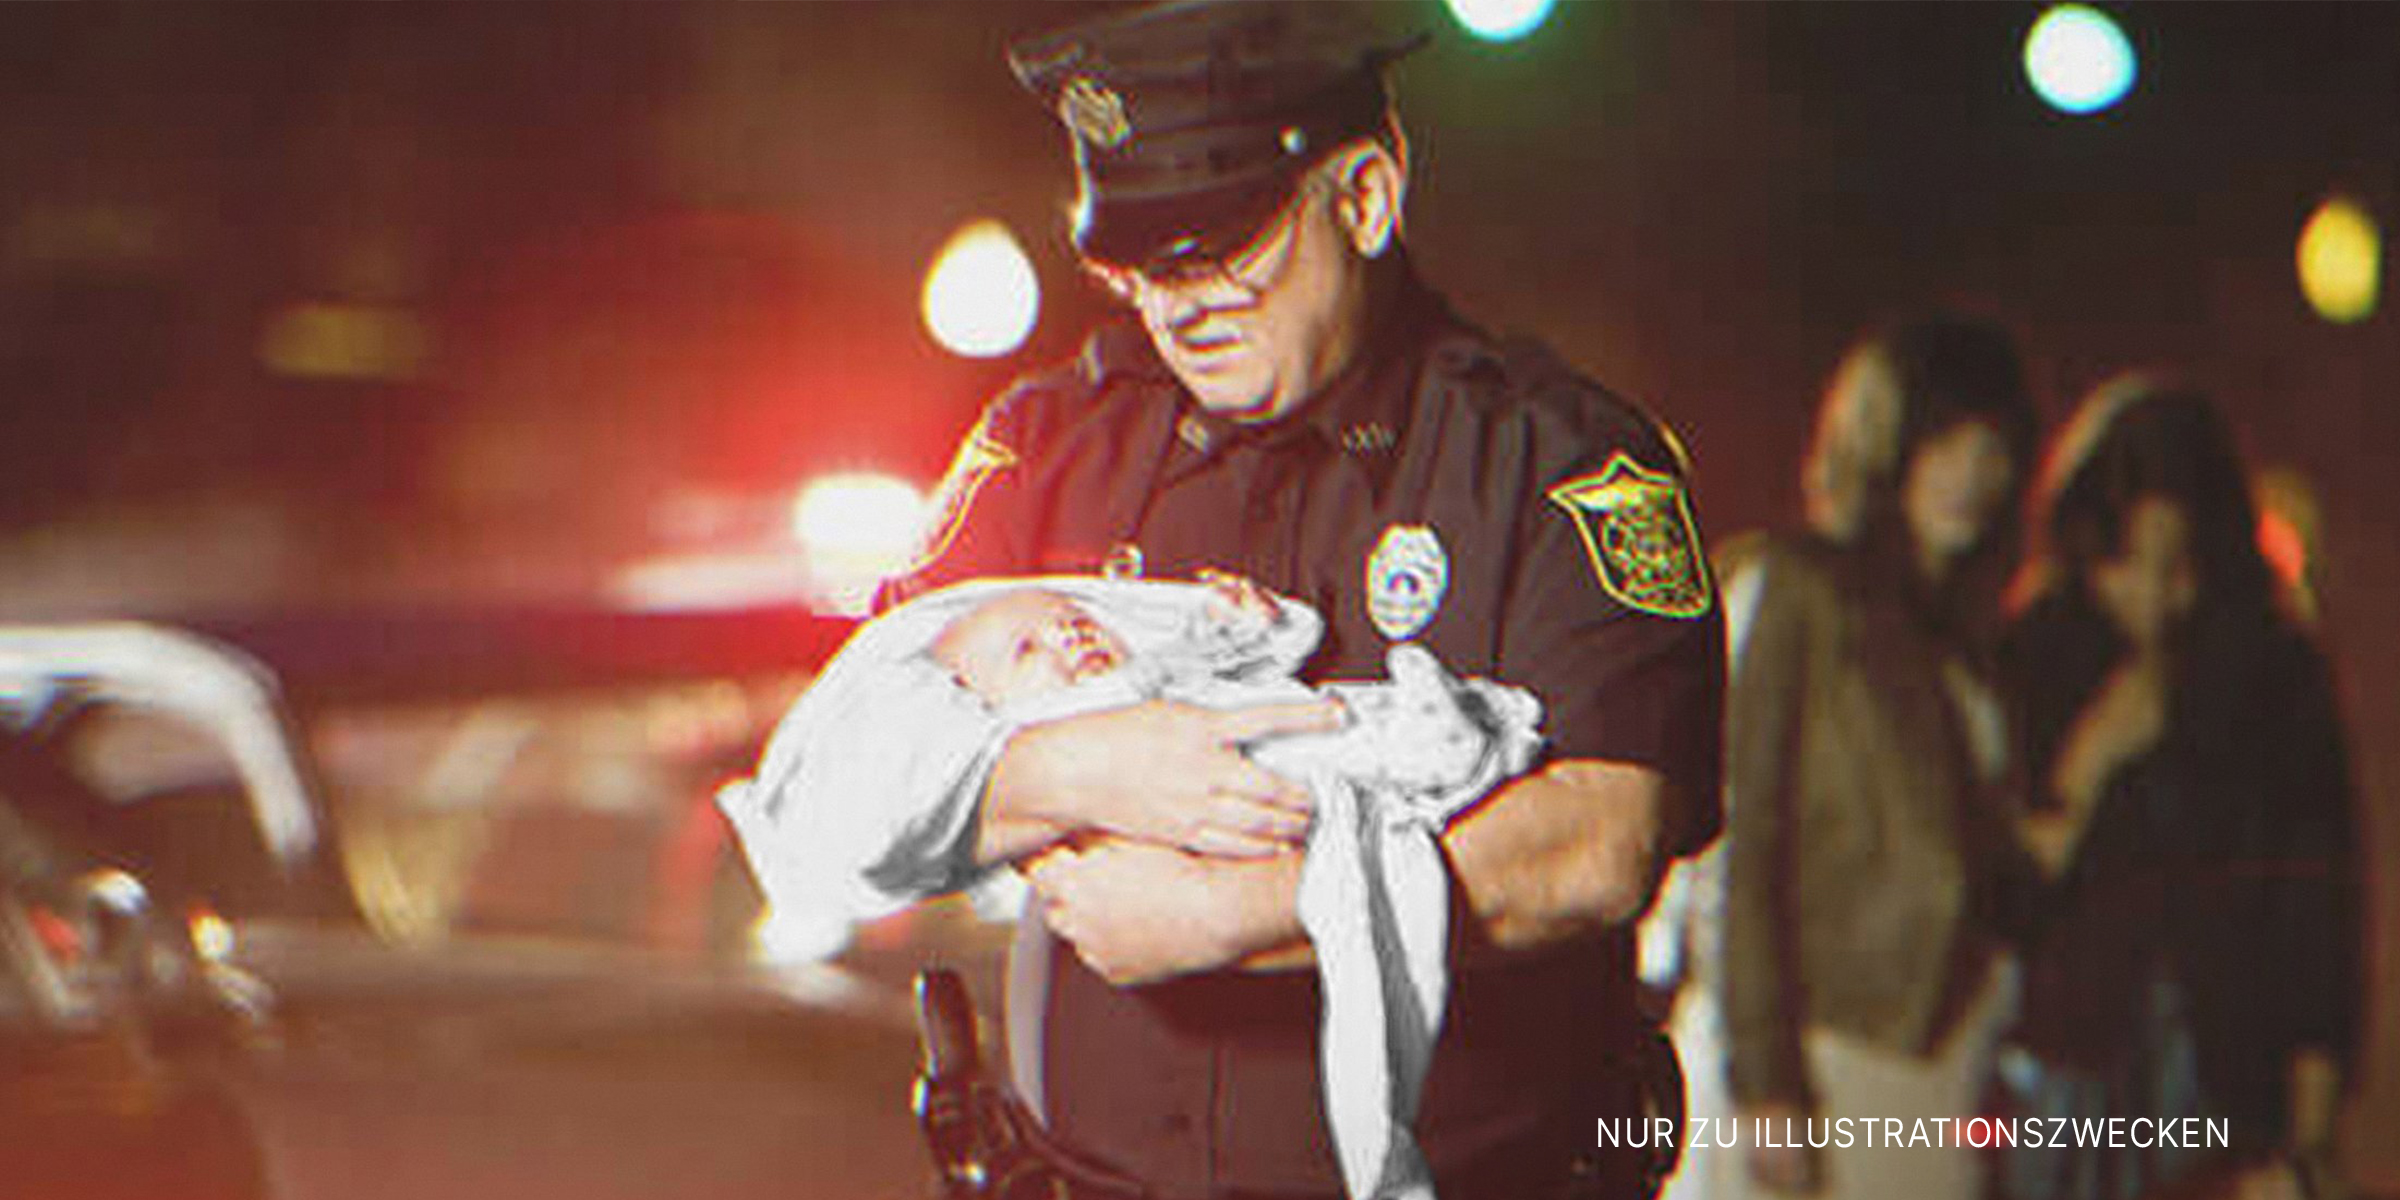 Polizist hält ein Baby. | Quelle: Getty Images